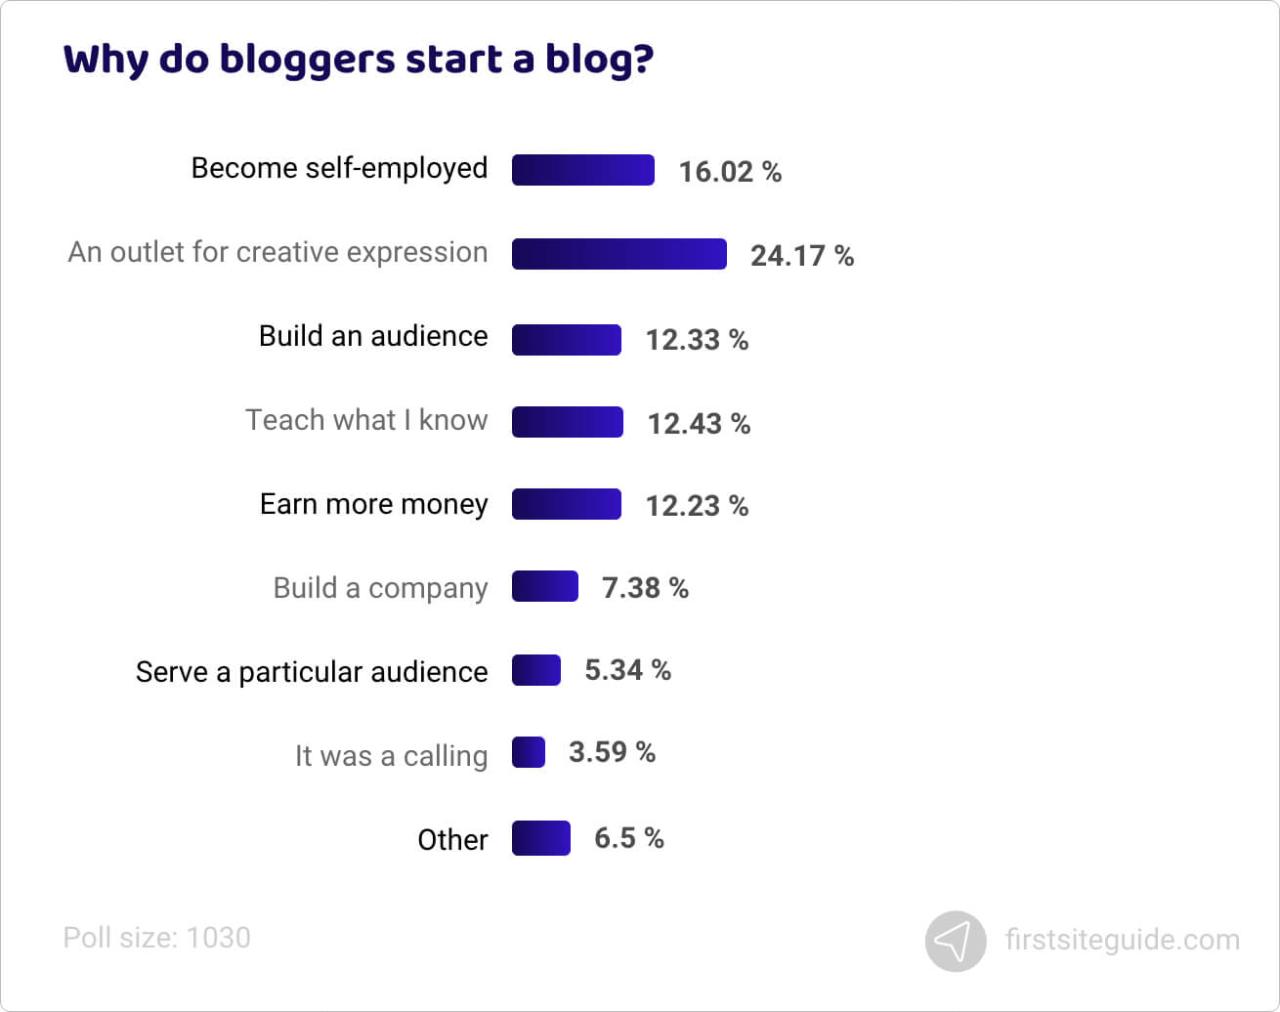 ¿Por qué los blogueros empiezan un blog?